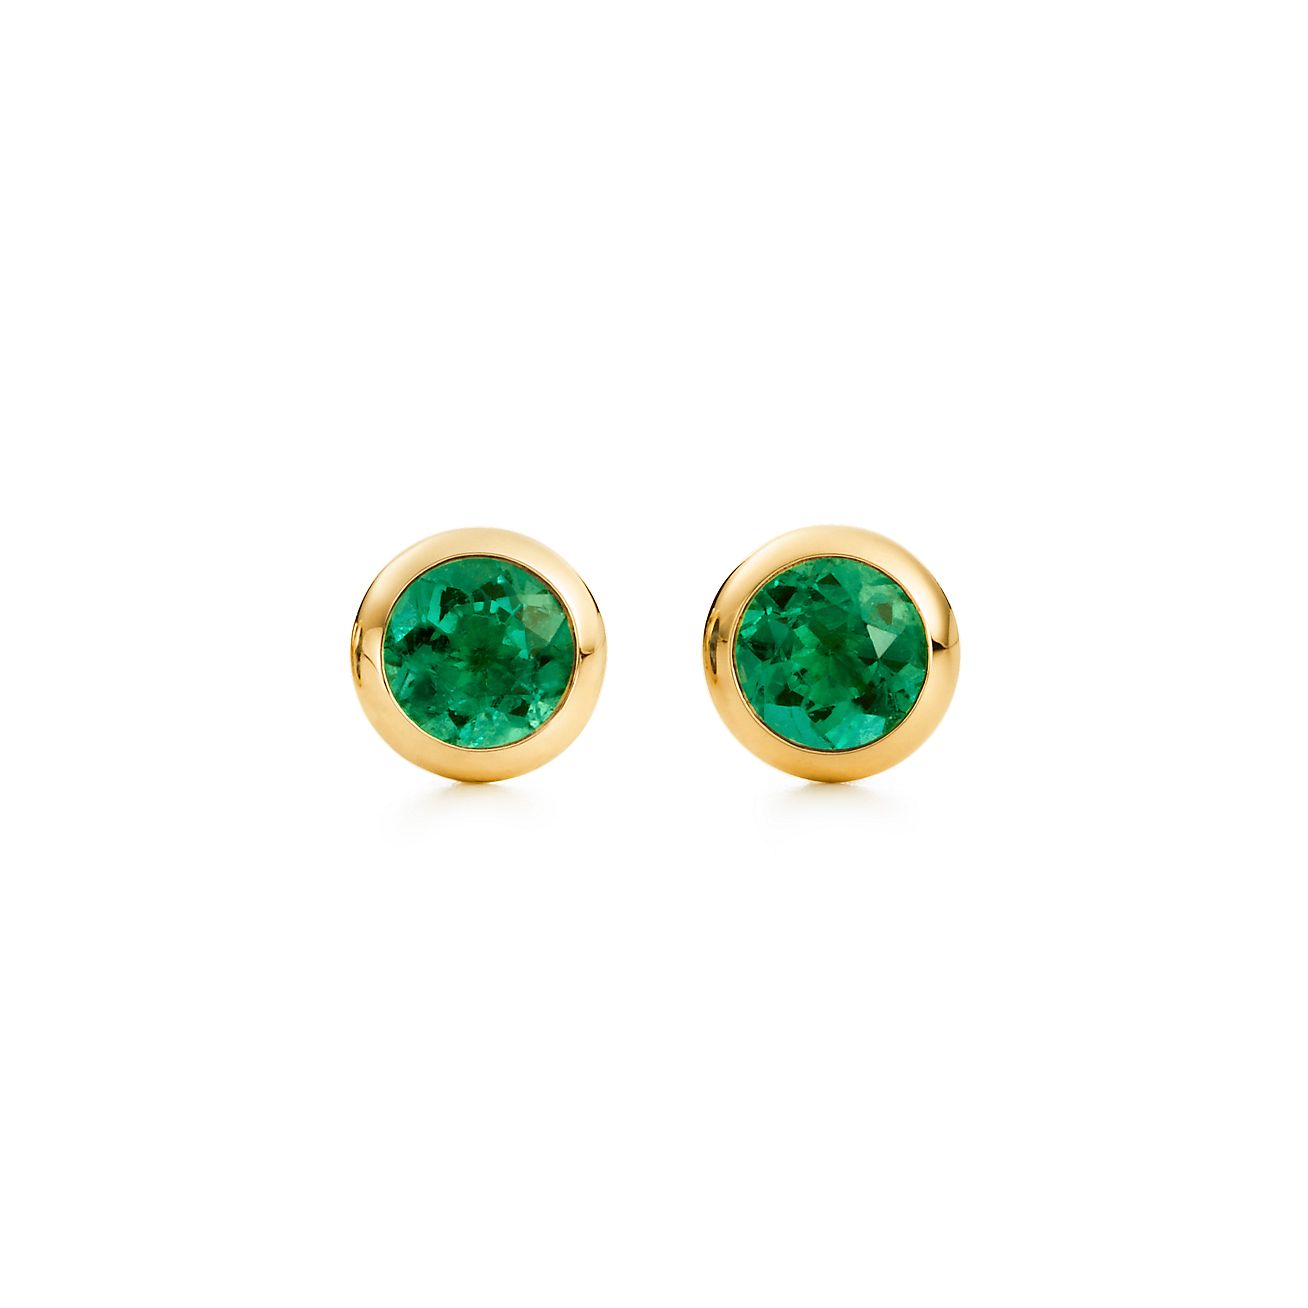 emerald stud earrings tiffany